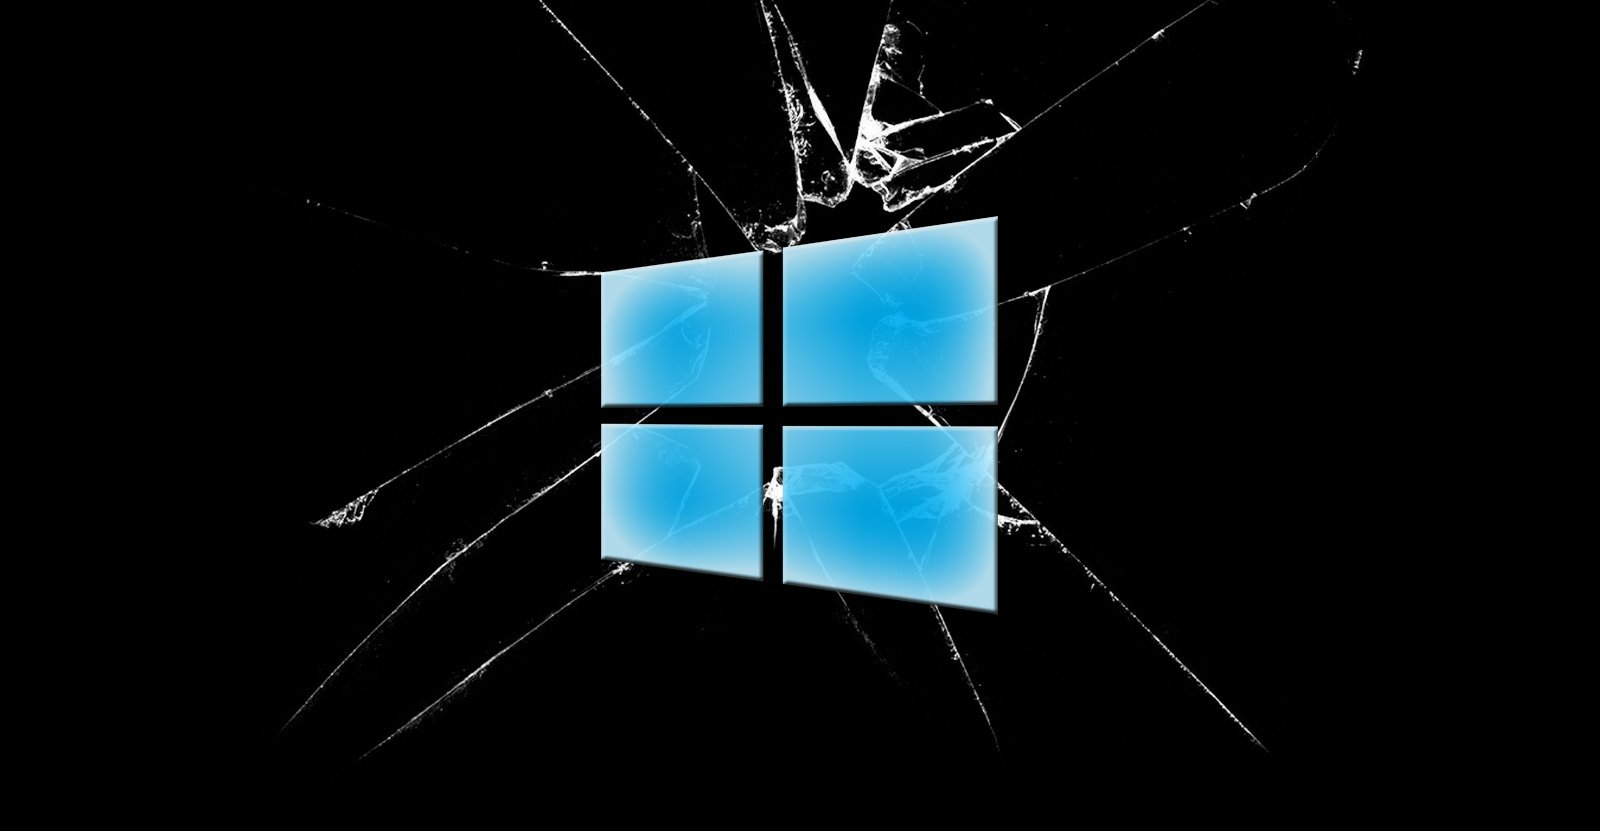 La dernière mise à jour de Windows 10 bloque les connexions Microsoft Teams et Outlook